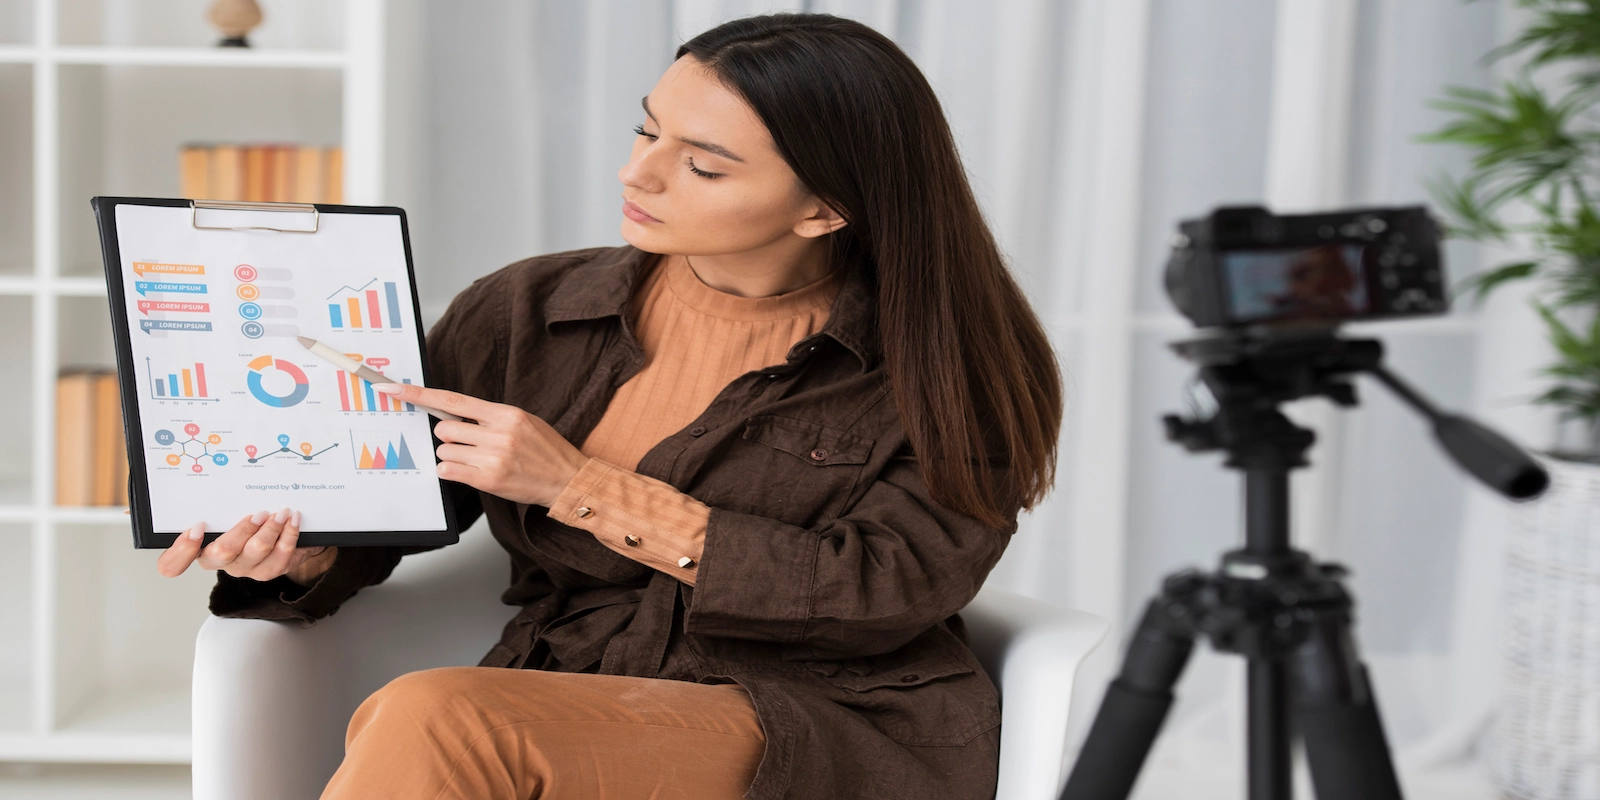 une image montrant une femme entrain d'analyser des statistiques sur une tablette